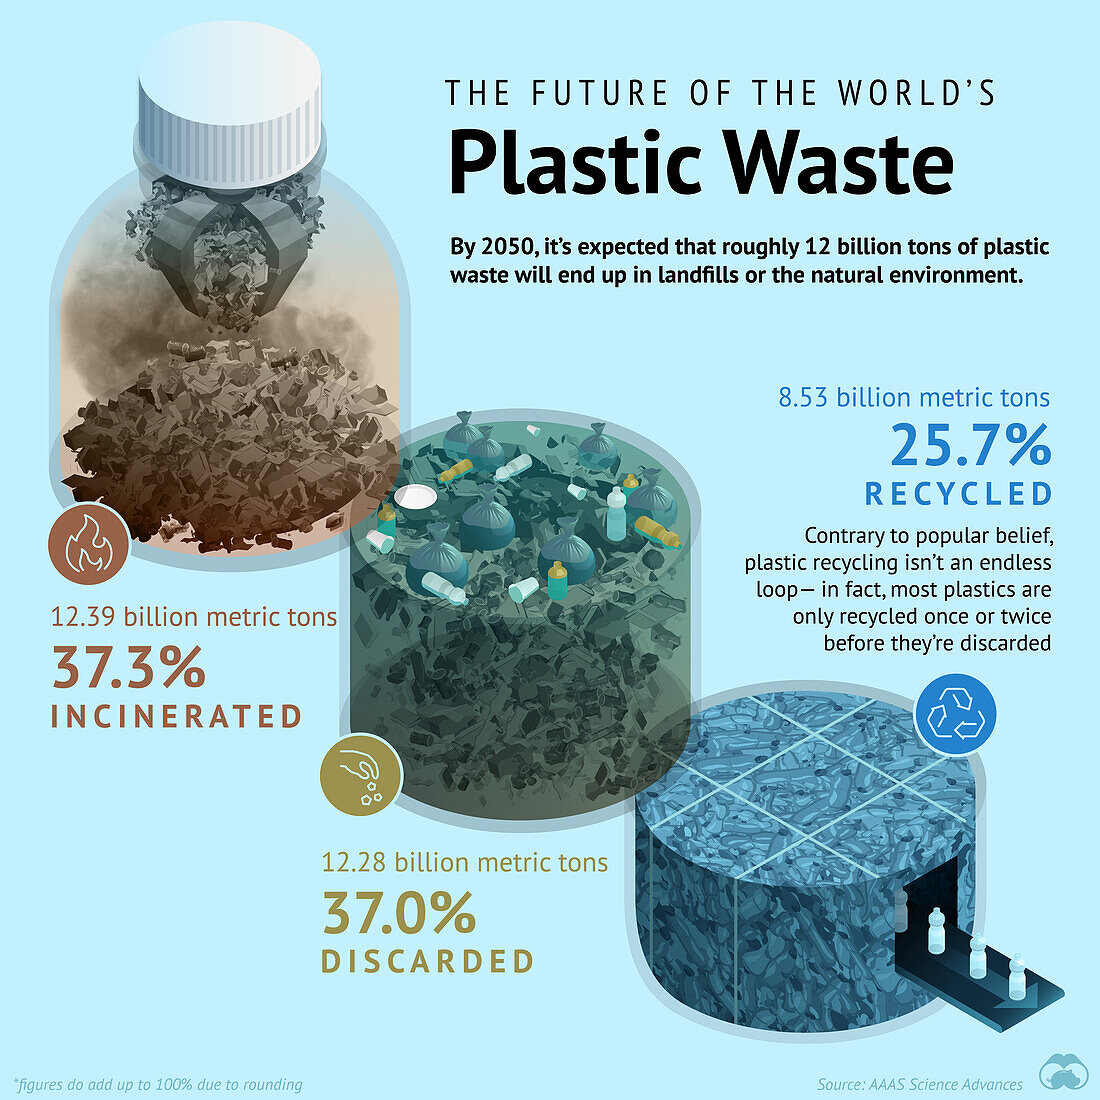 Future of plastic waste, illustration